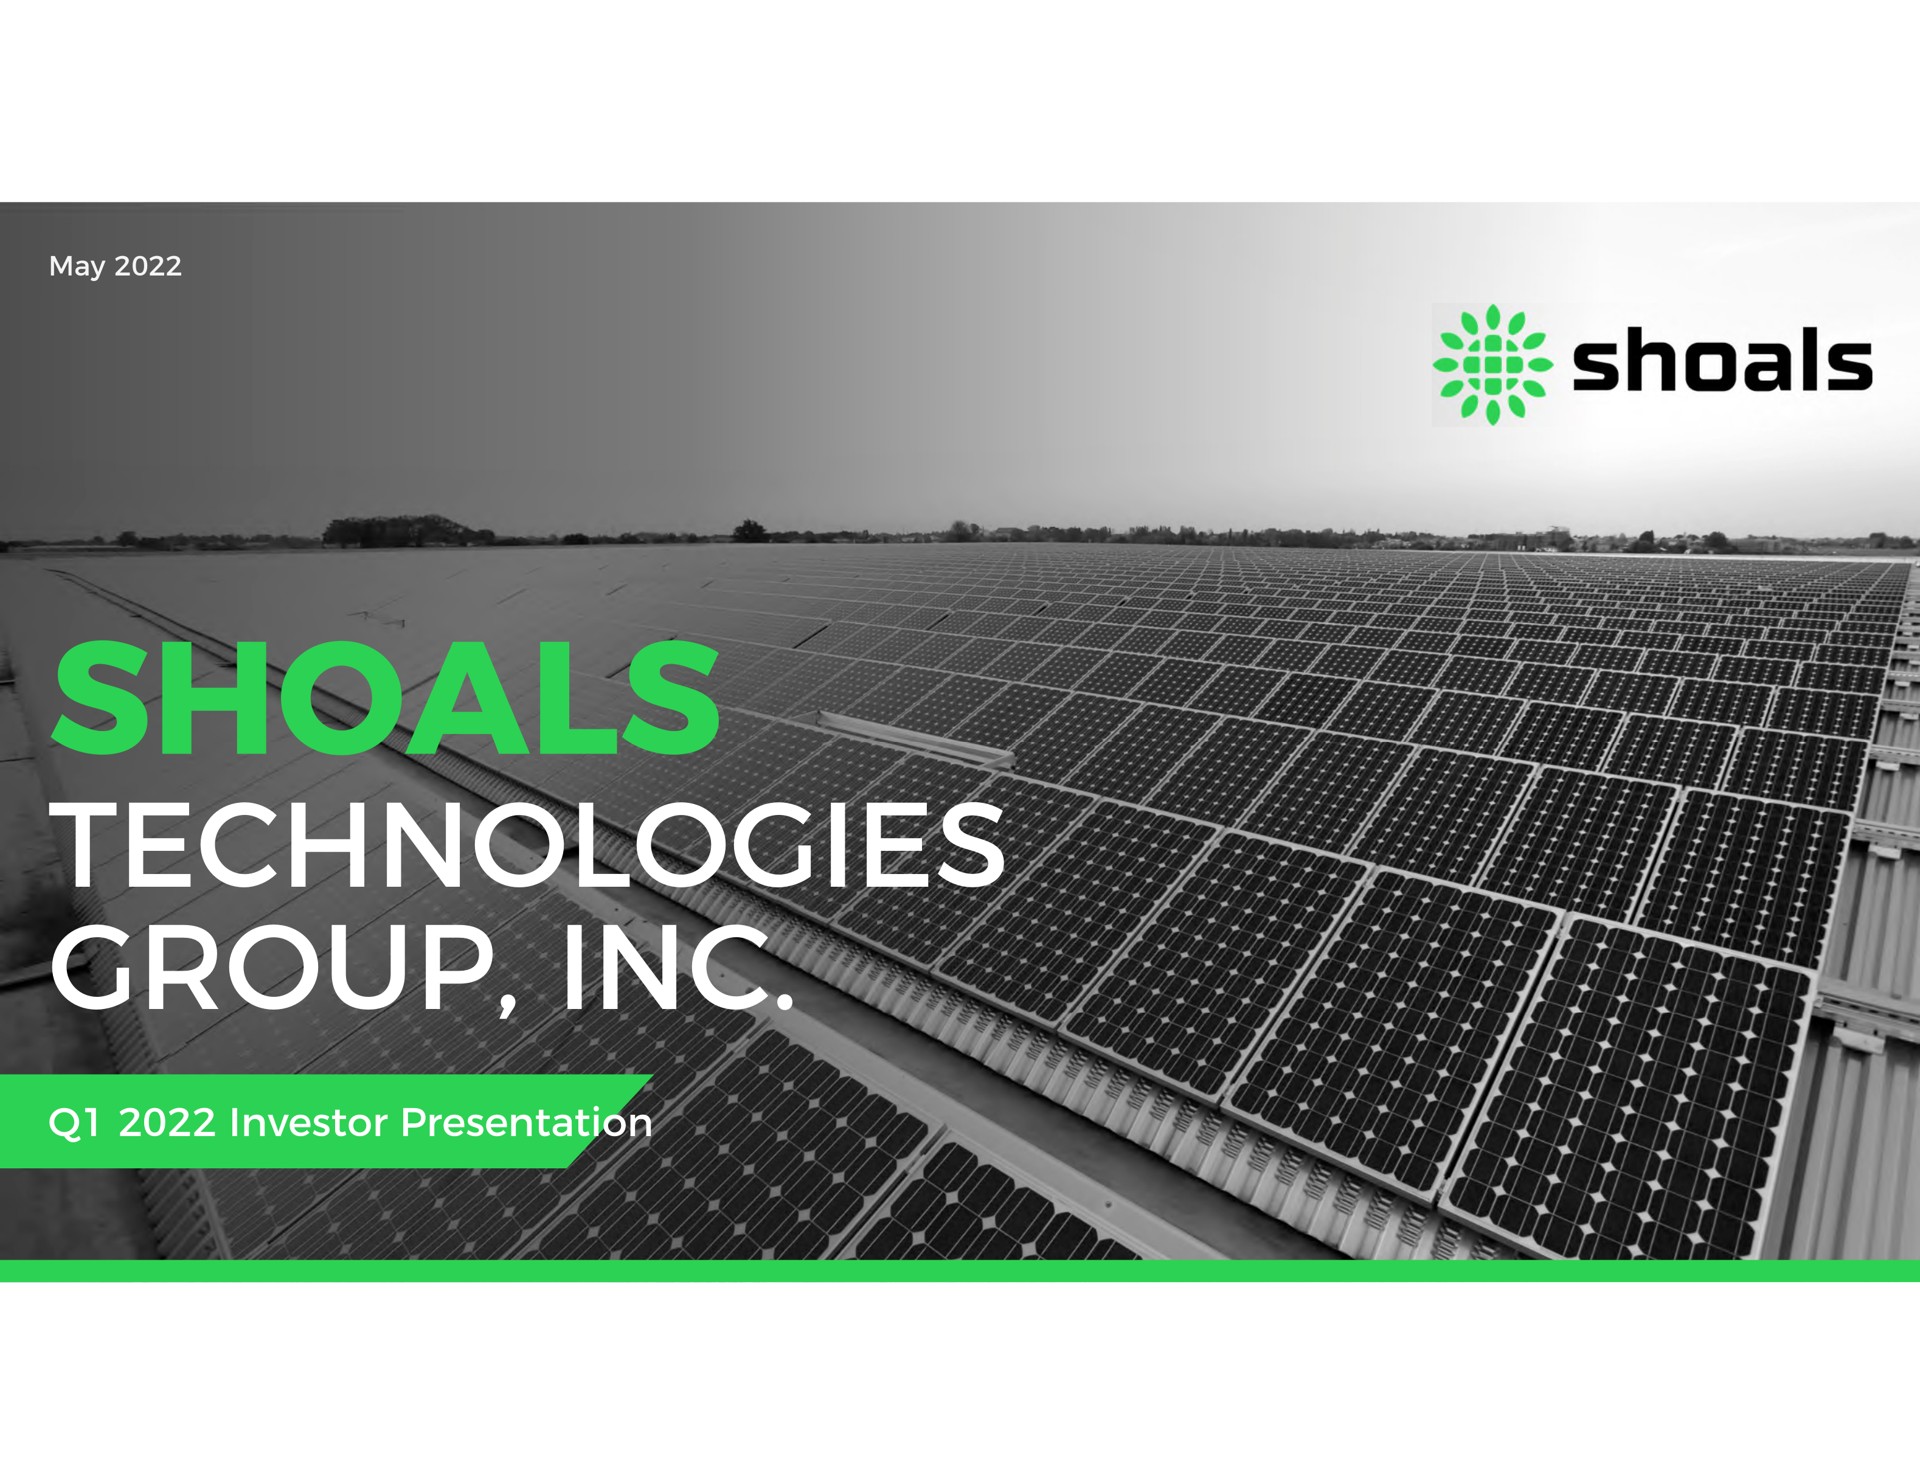 technologies group as shoals | Shoals